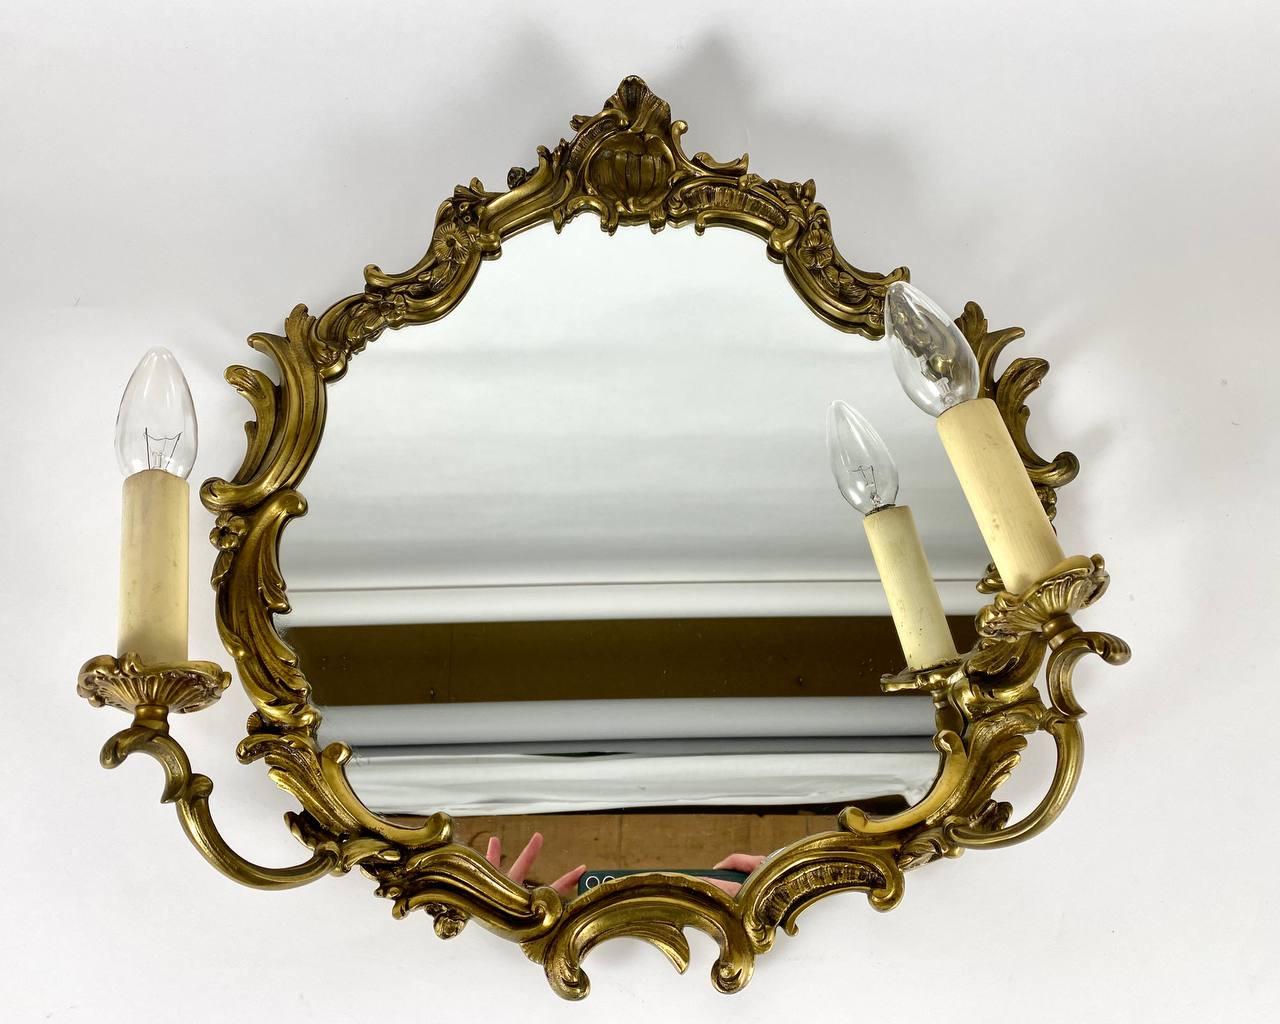 Miroir girandole à deux lumières de style baroque vers le 20e siècle en laiton couleur bronze.

Le miroir, de forme ovale, est orné d'une crête d'acanthe ajourée et enroulée, et est flanqué de pilastres et de festons floraux.

La structure du cadre